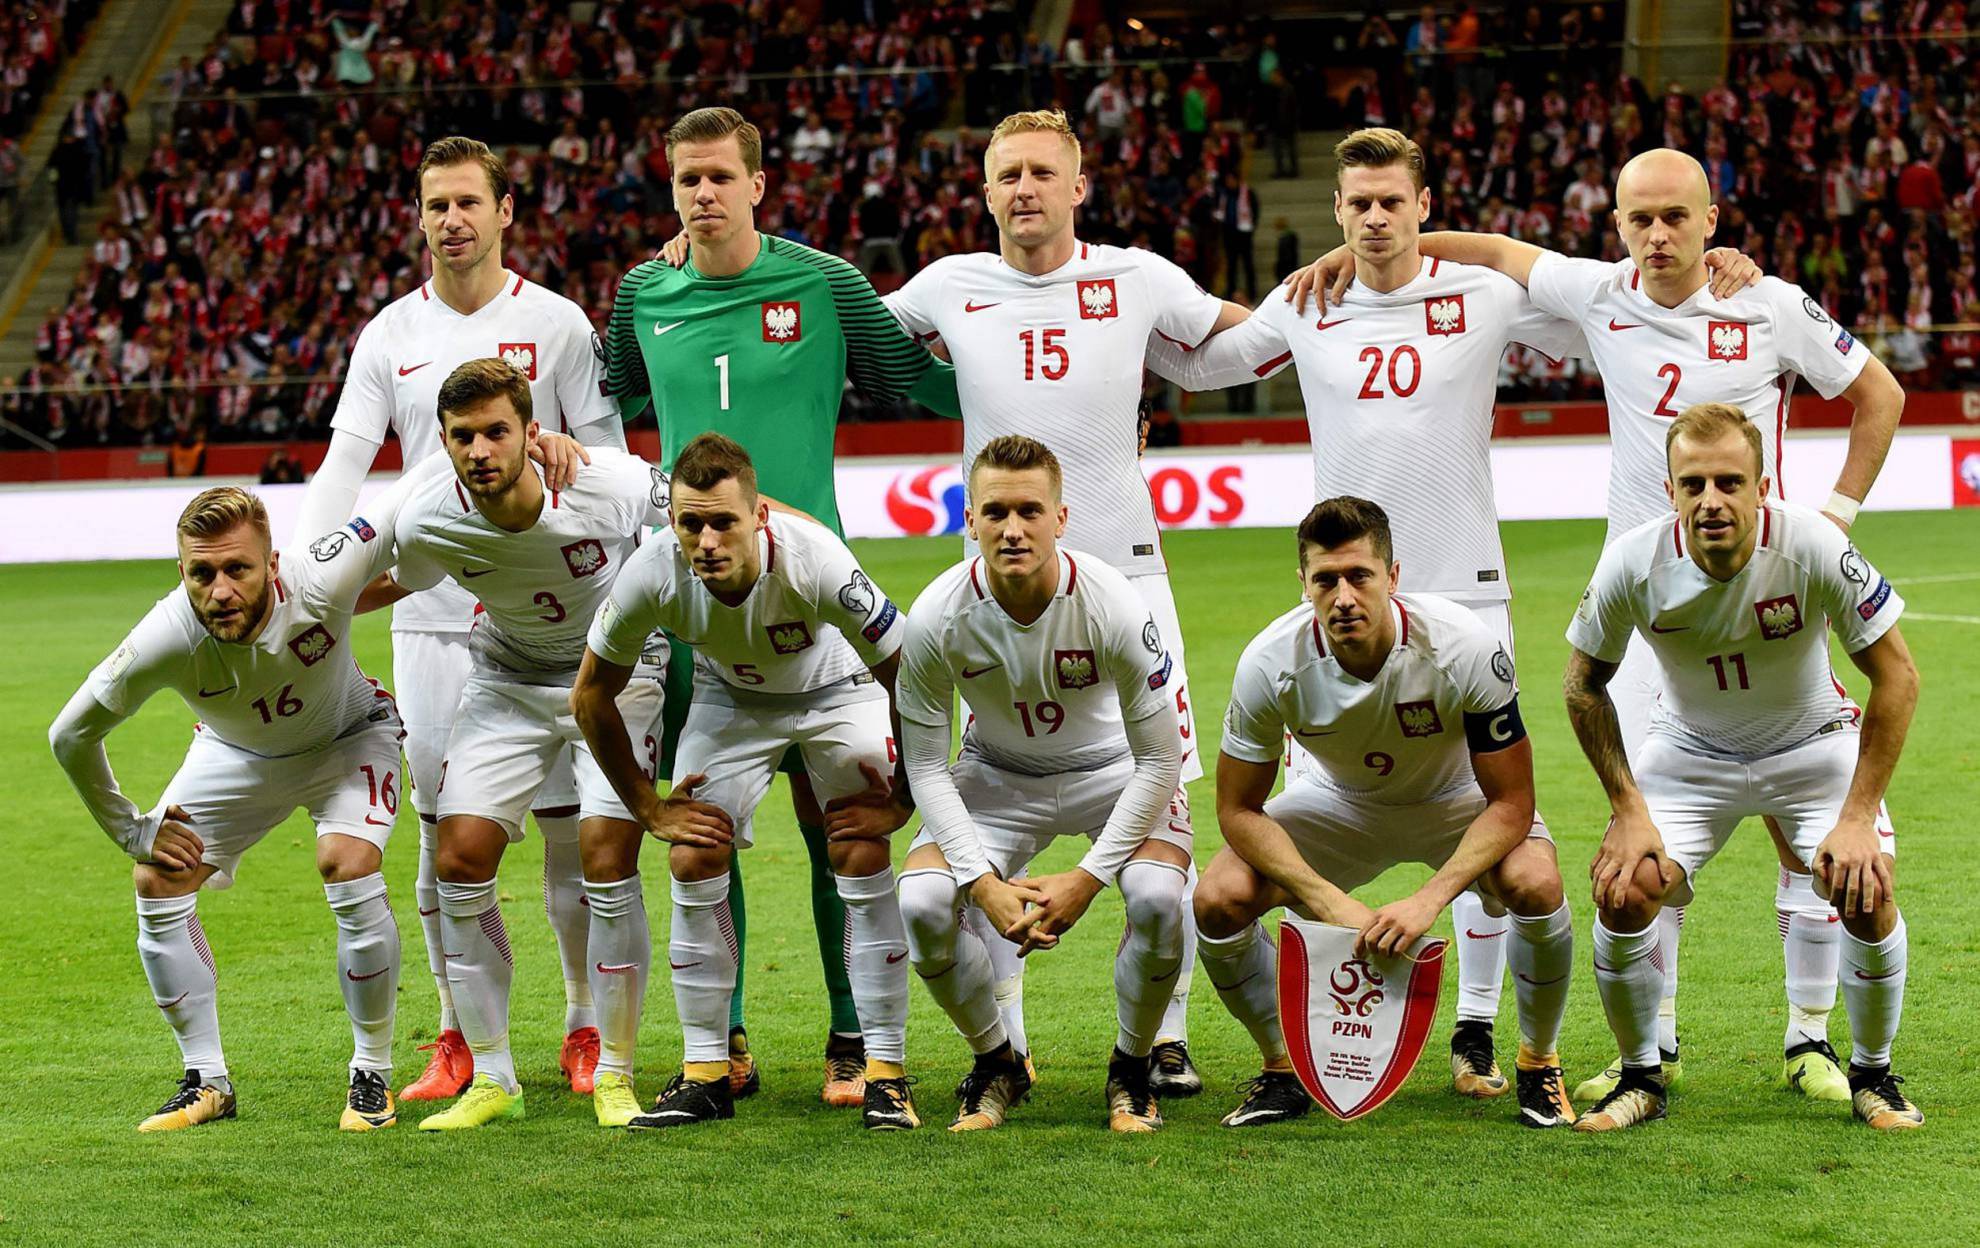 Alineación de Polonia en el Mundial 2018